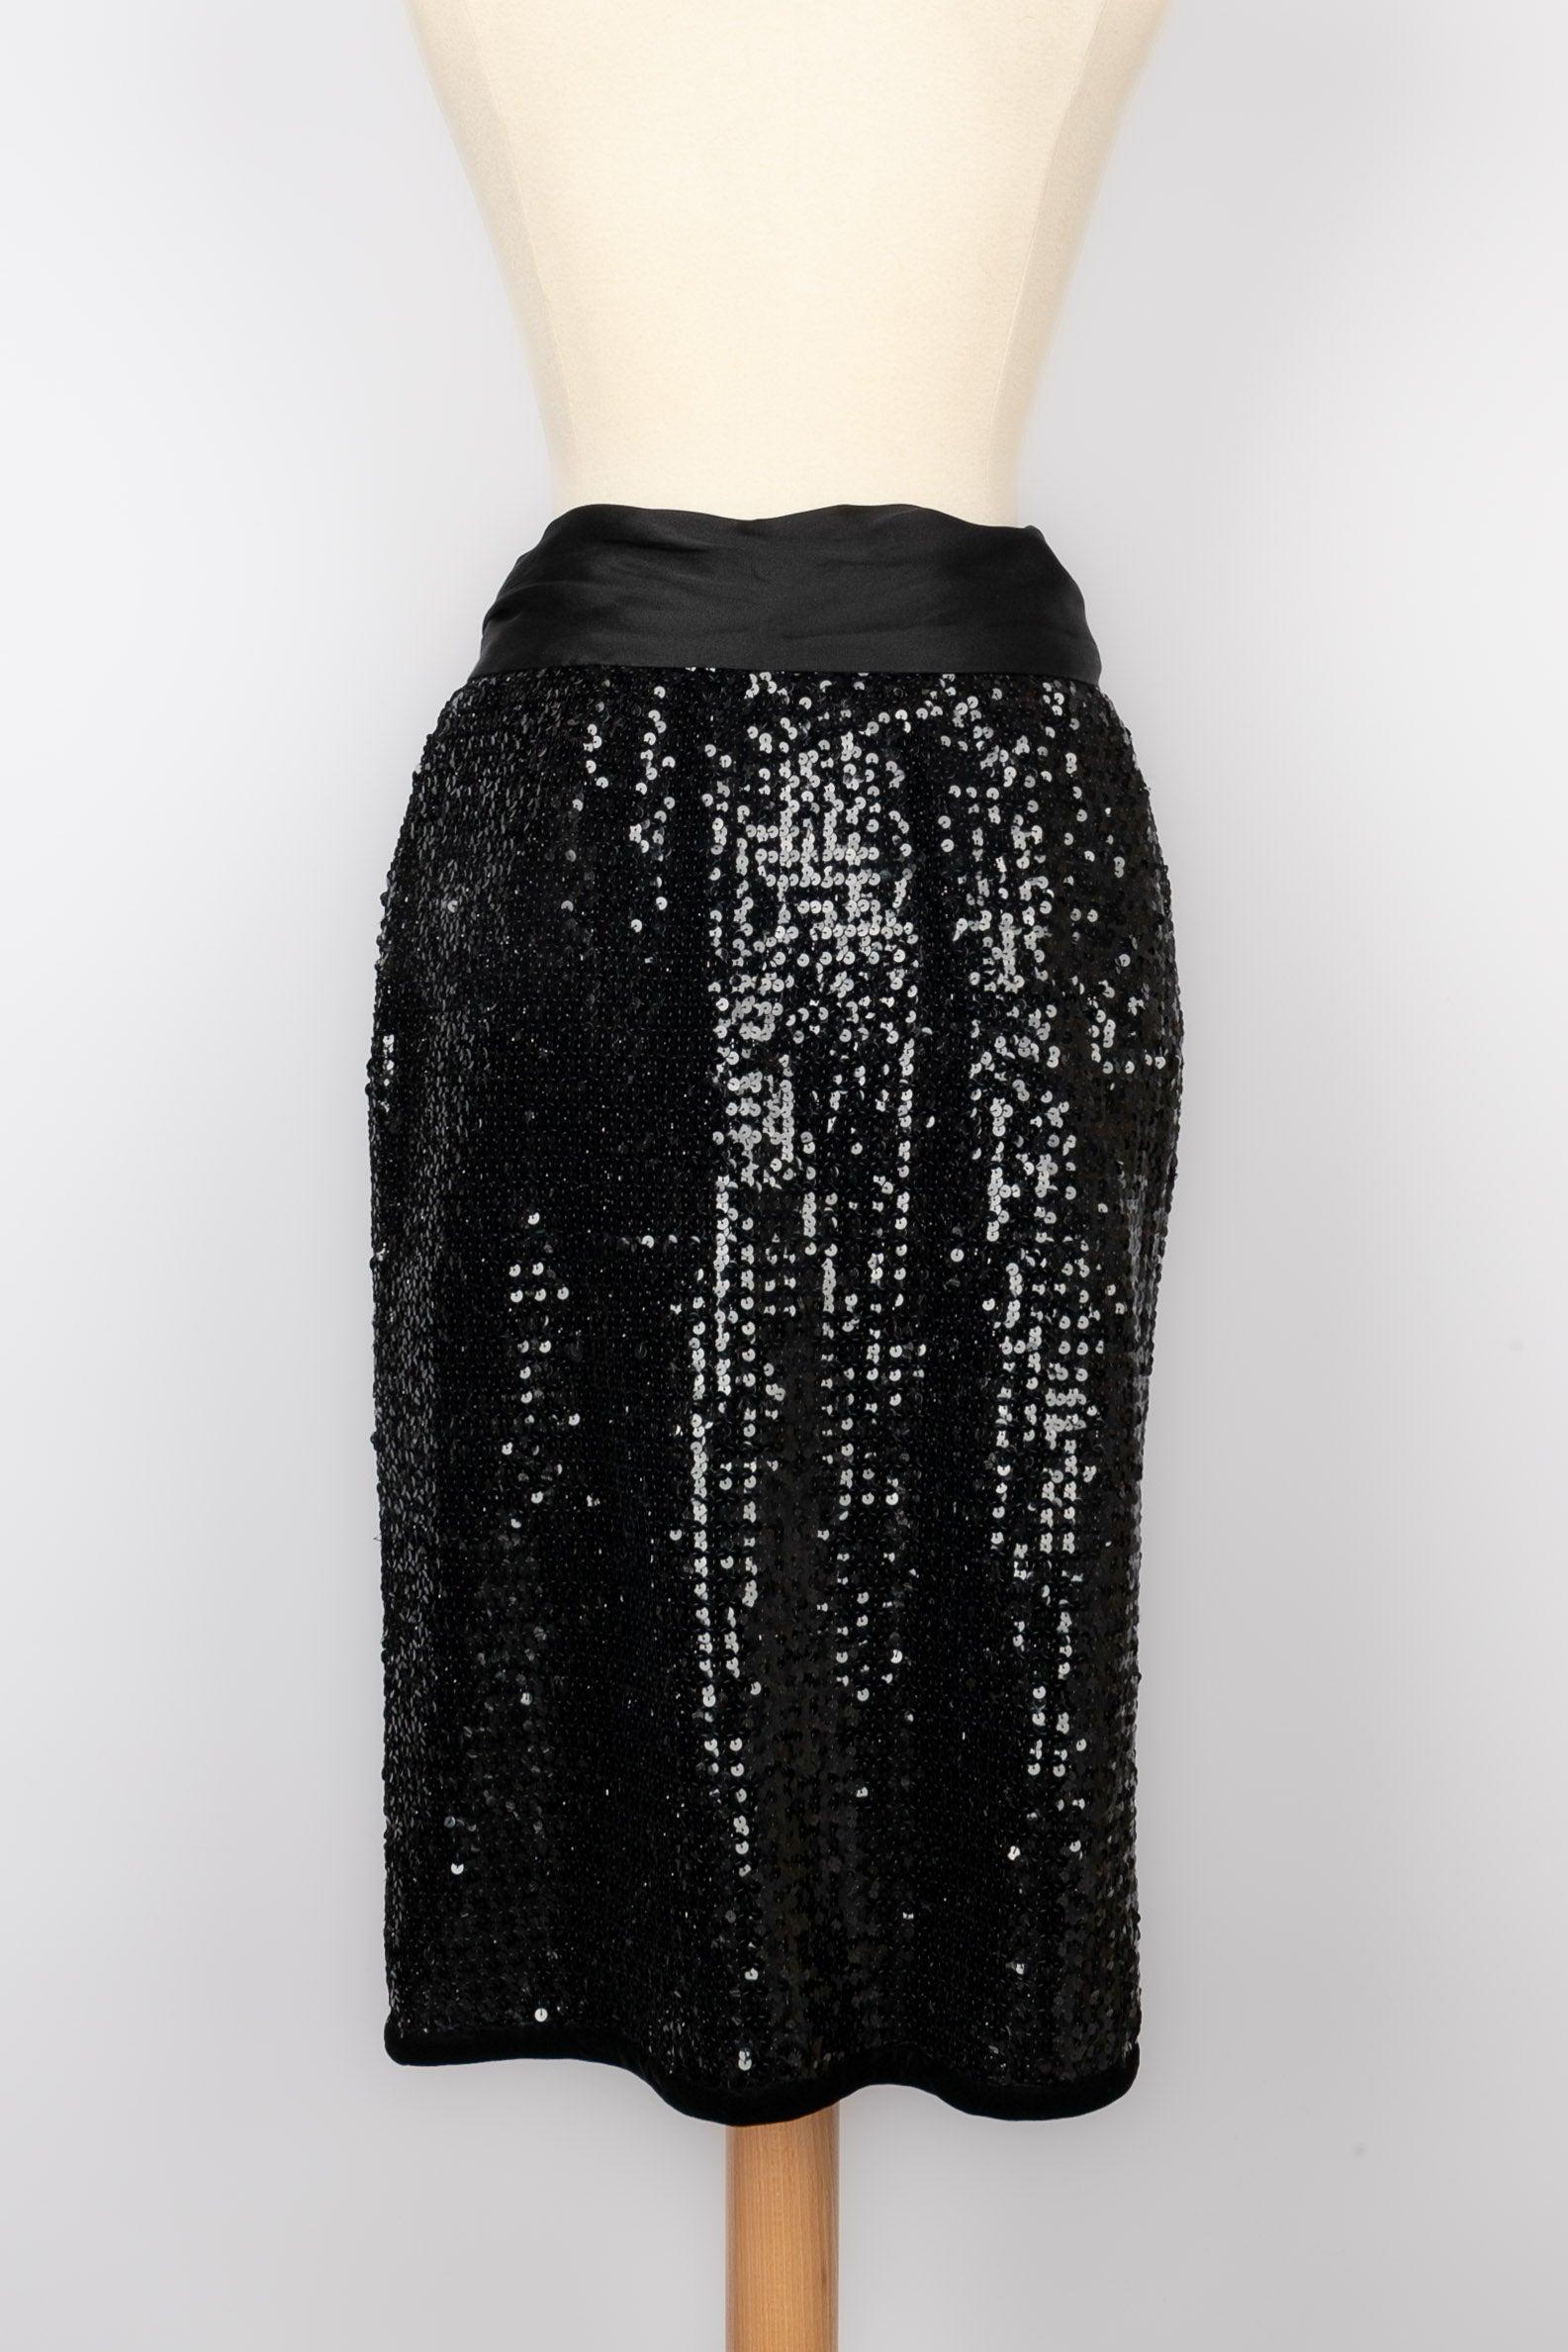 Yves Saint Laurent Black Sequin Sort Skirt In Excellent Condition For Sale In SAINT-OUEN-SUR-SEINE, FR